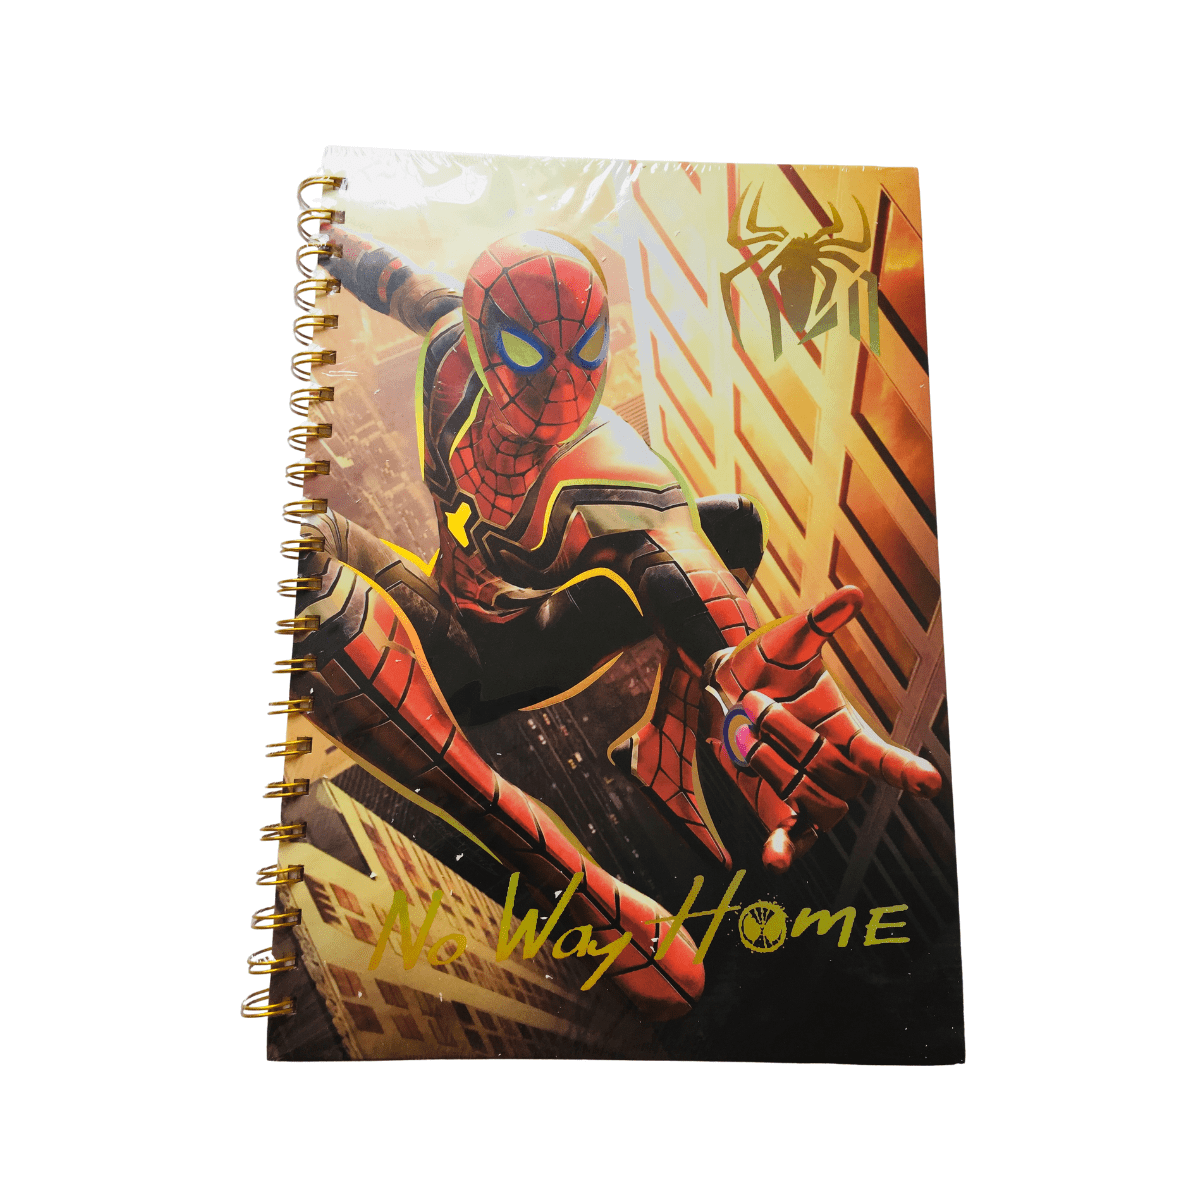 Cuaderno Universitario Marvel Spiderman 100 Hojas